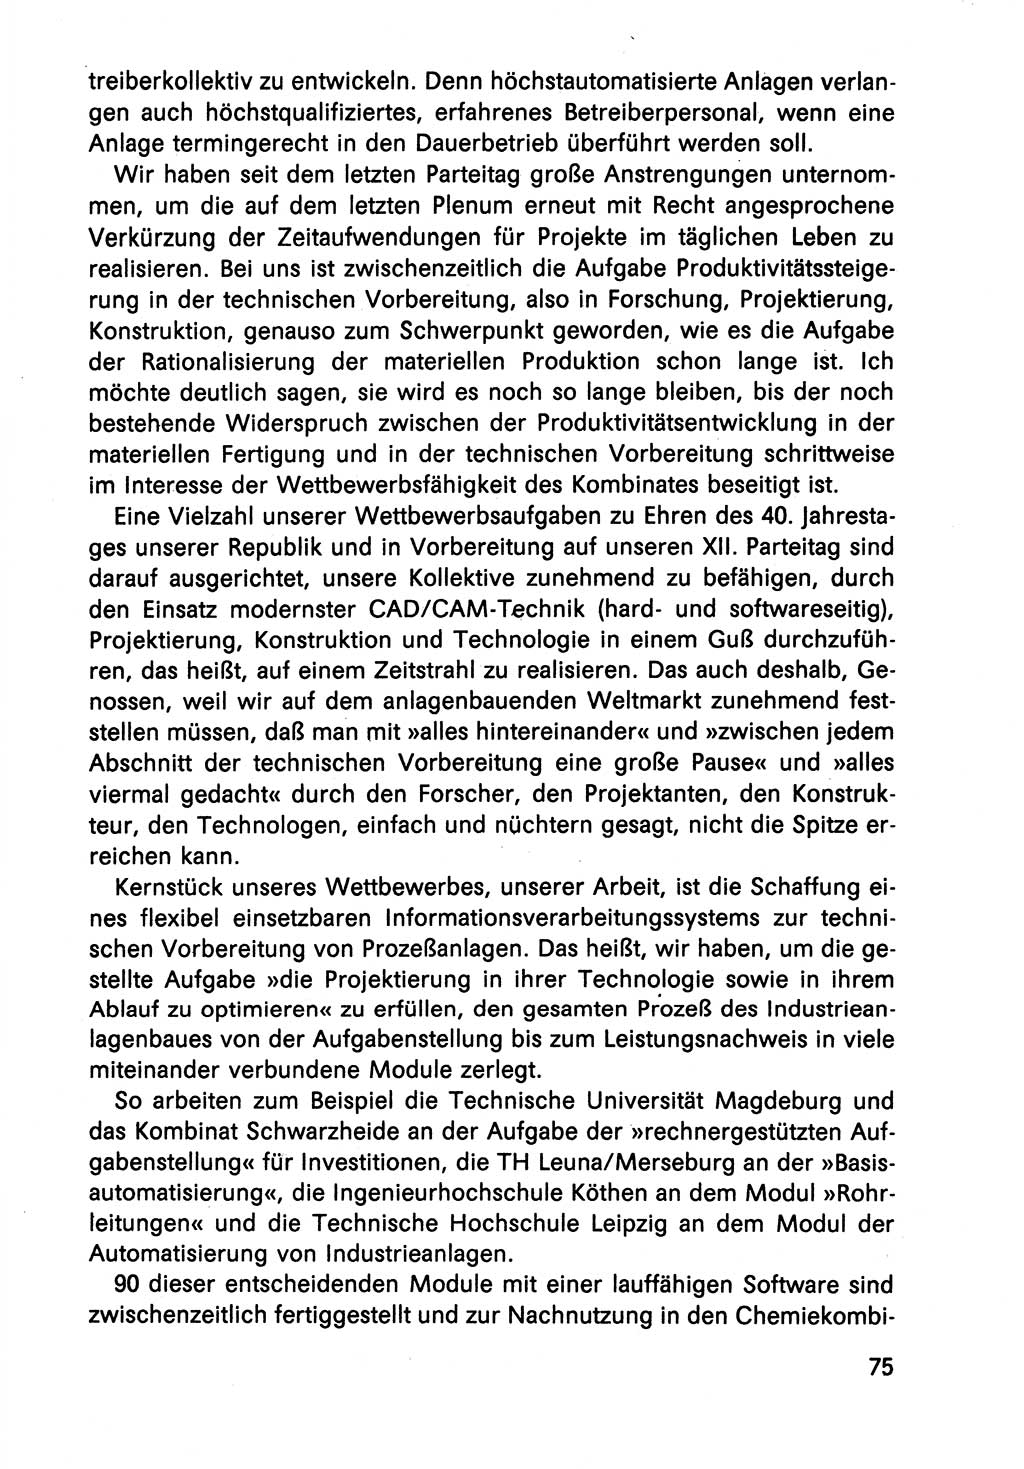 Diskussionsreden, 8. Tagung des ZK (Zentralkomitee) der SED (Sozialistische Einheitspartei Deutschlands) [Deutsche Demokratische Republik (DDR)] 1989, Seite 75 (Disk.-Red. 8. Tg. ZK SED DDR 1989, S. 75)